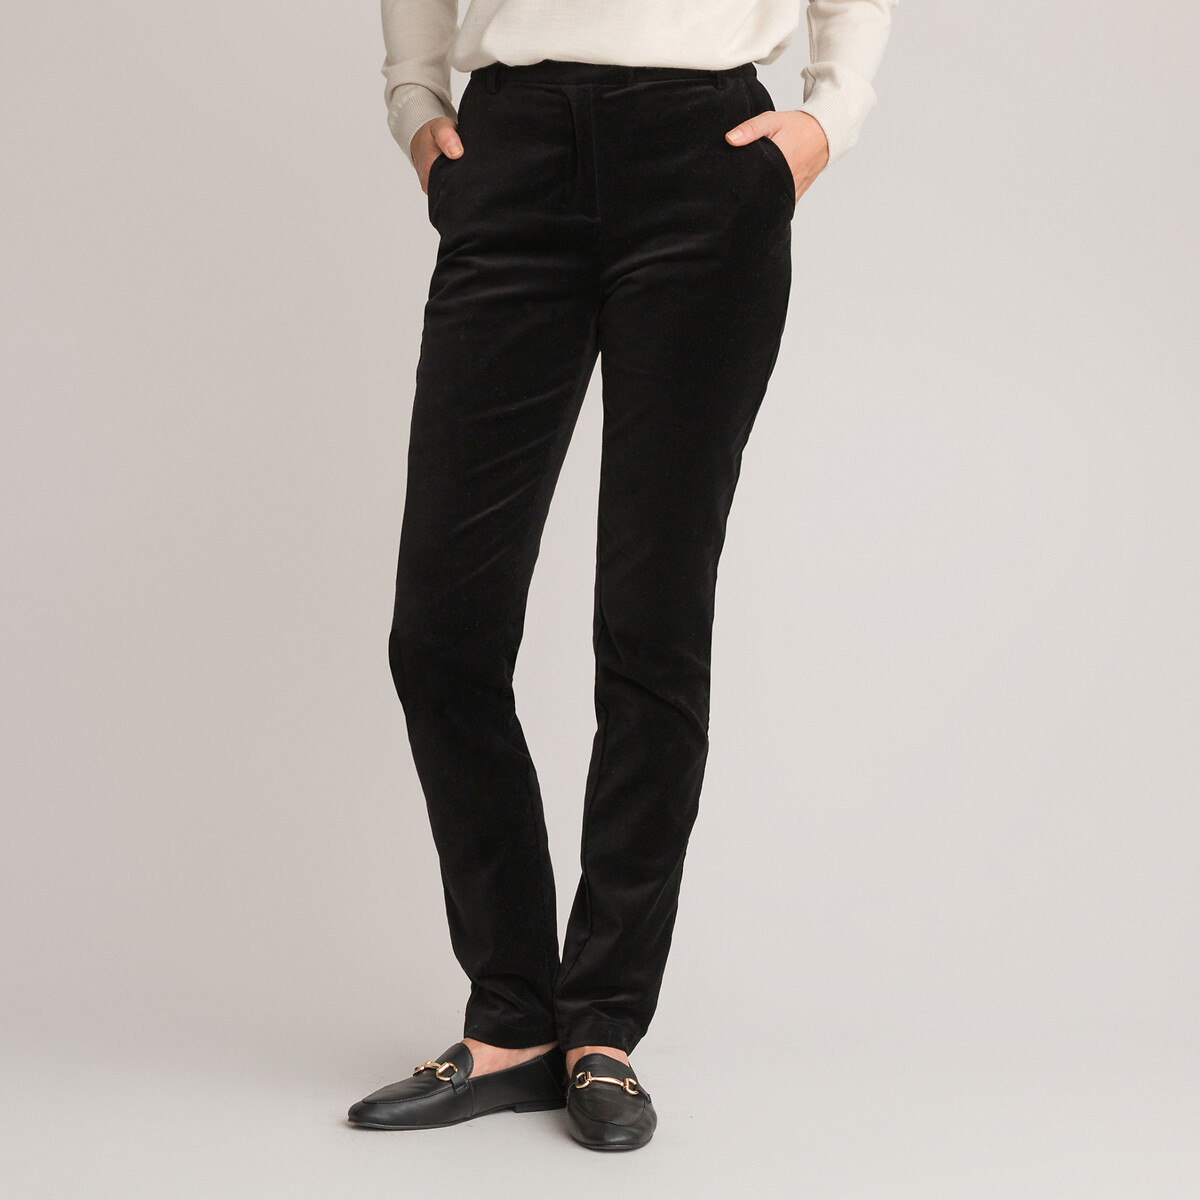 Velvet peg trousers, length 30.5